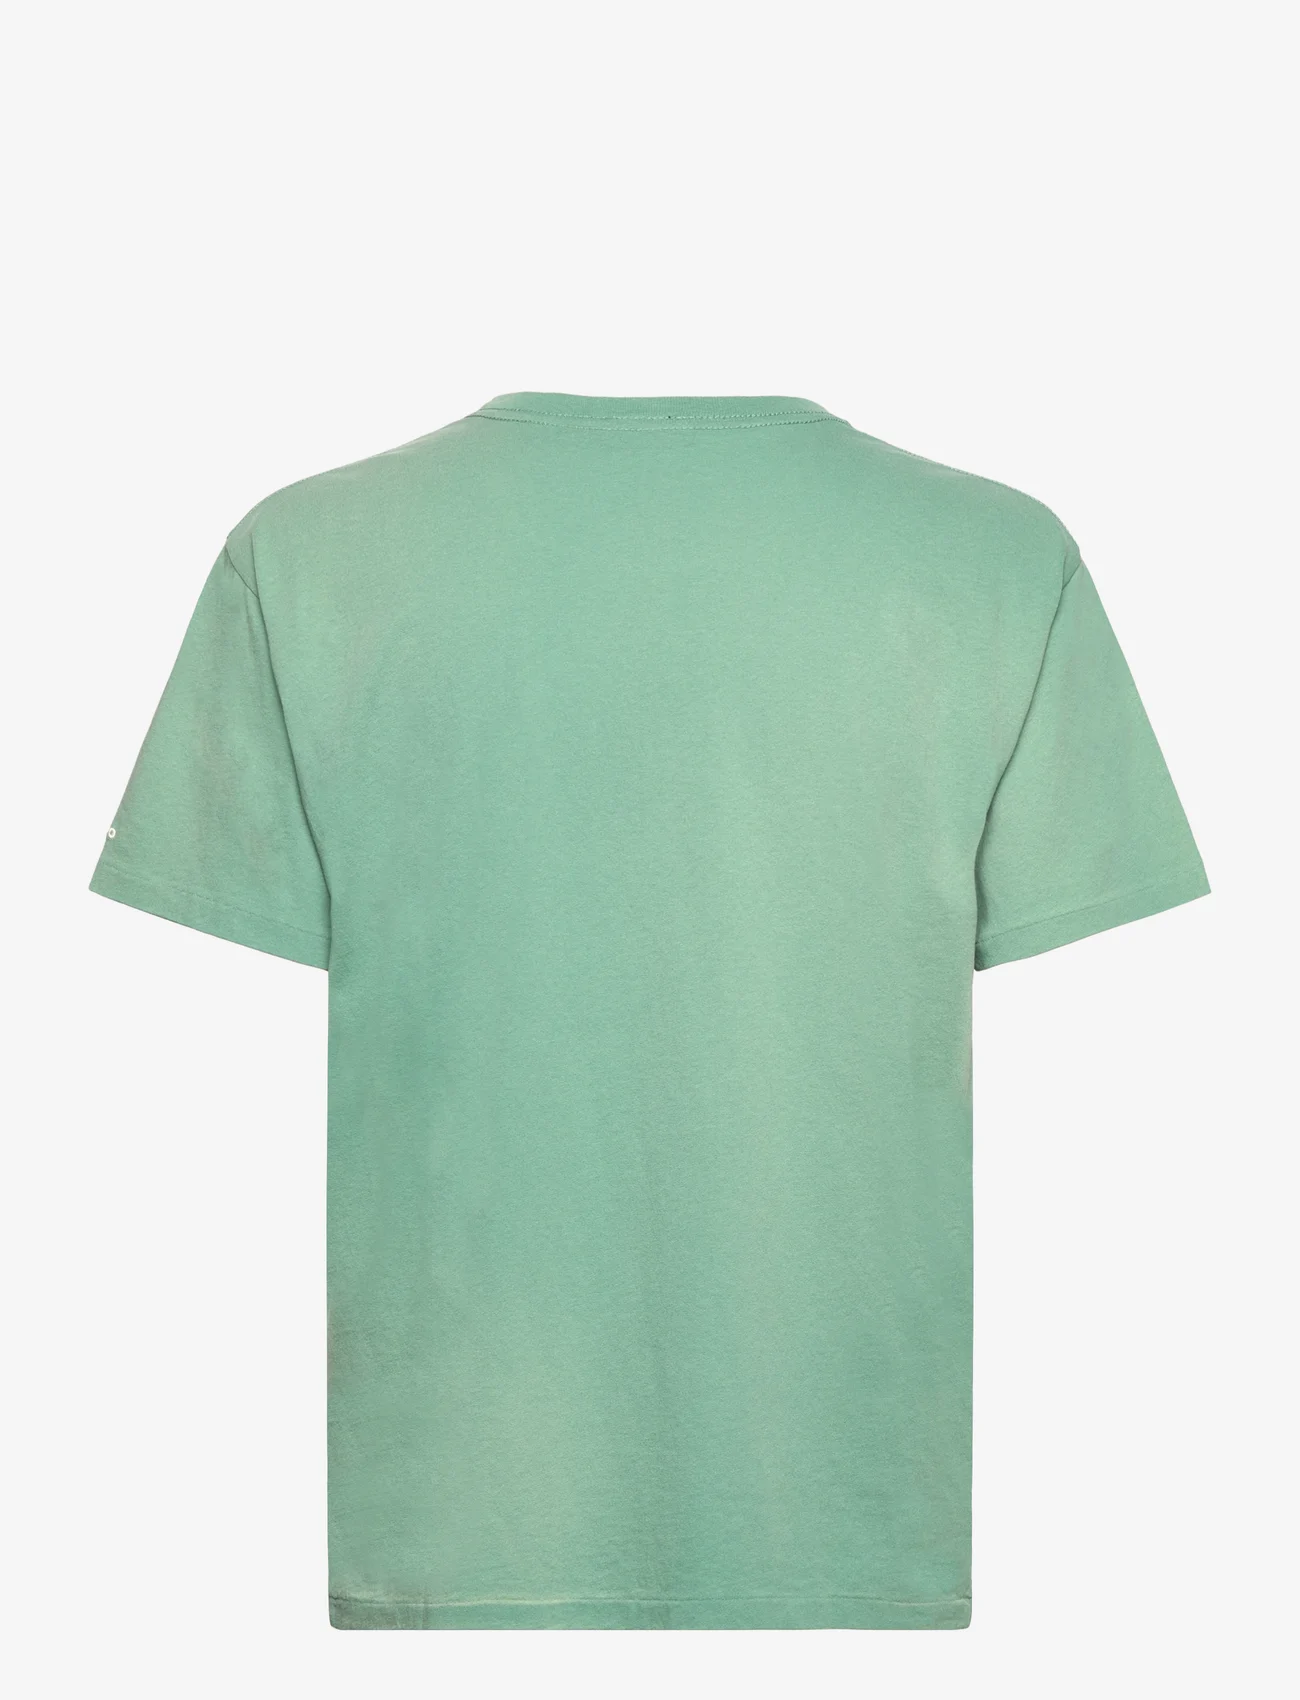 Polo Ralph Lauren - RL Logo Jersey Tee - t-shirts - fairway green - 1